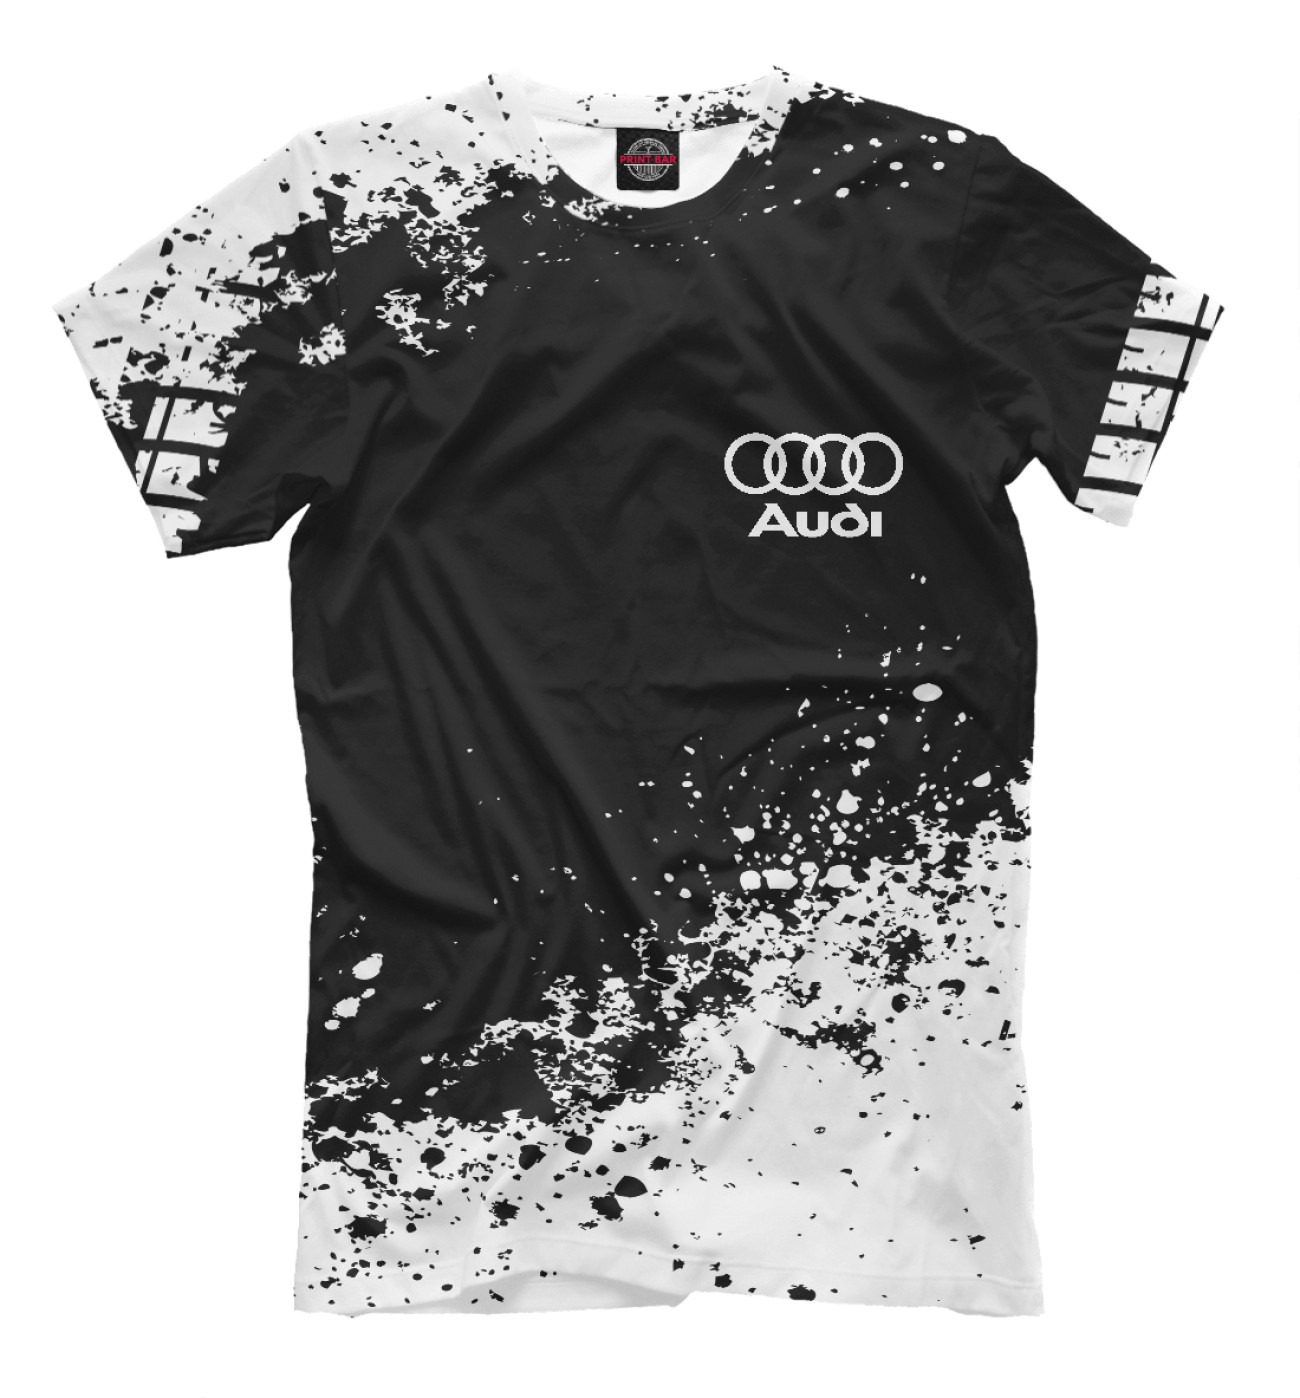 Мужская Футболка Audi abstract sport uniform, артикул: AUD-943965-fut-2